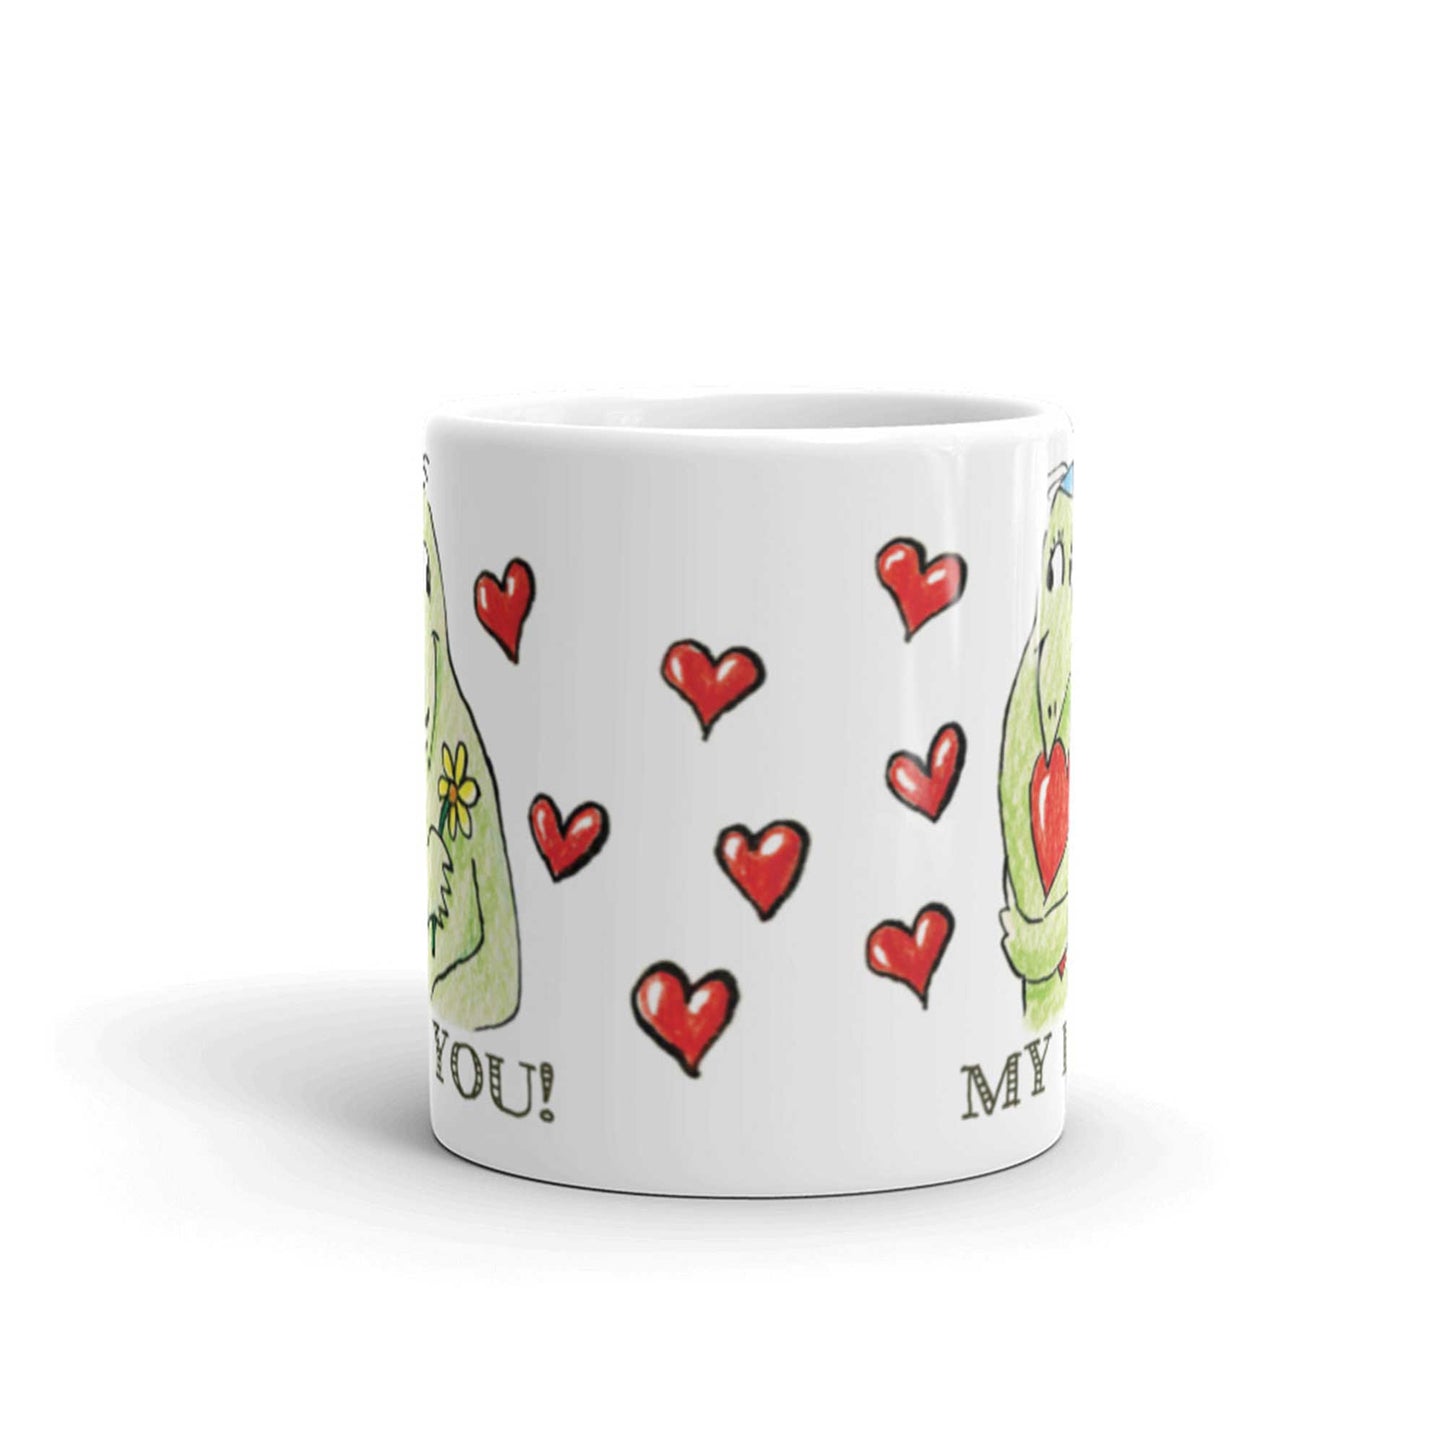 かわいいな NYのカッパ "LOVE YOU, MY LOVE!" NYの河童 かっぱ コーヒー マグカップ NY Kappa Love You, My Love Coffee Mug Cup Front View